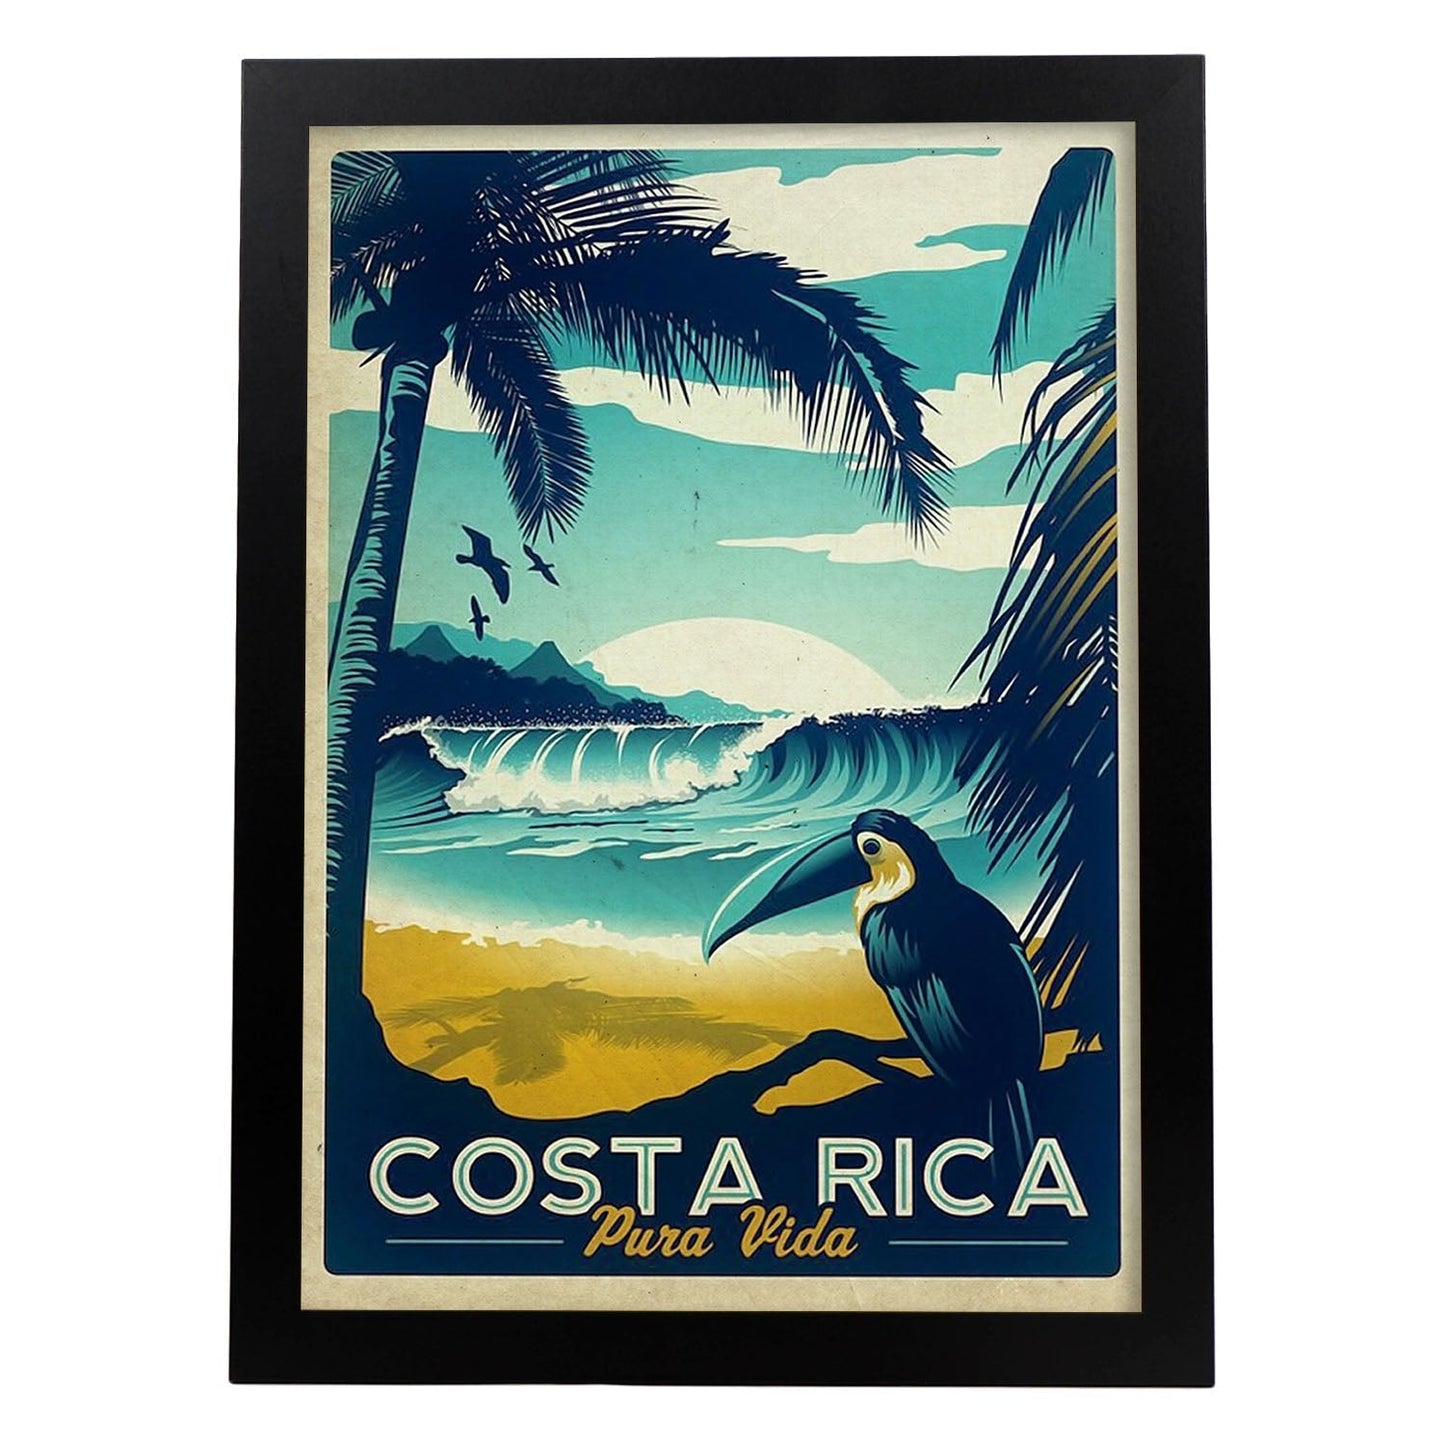 Poster vintage de Costa rica. con imágenes vintage y de publicidad antigua.-Artwork-Nacnic-A4-Marco Negro-Nacnic Estudio SL